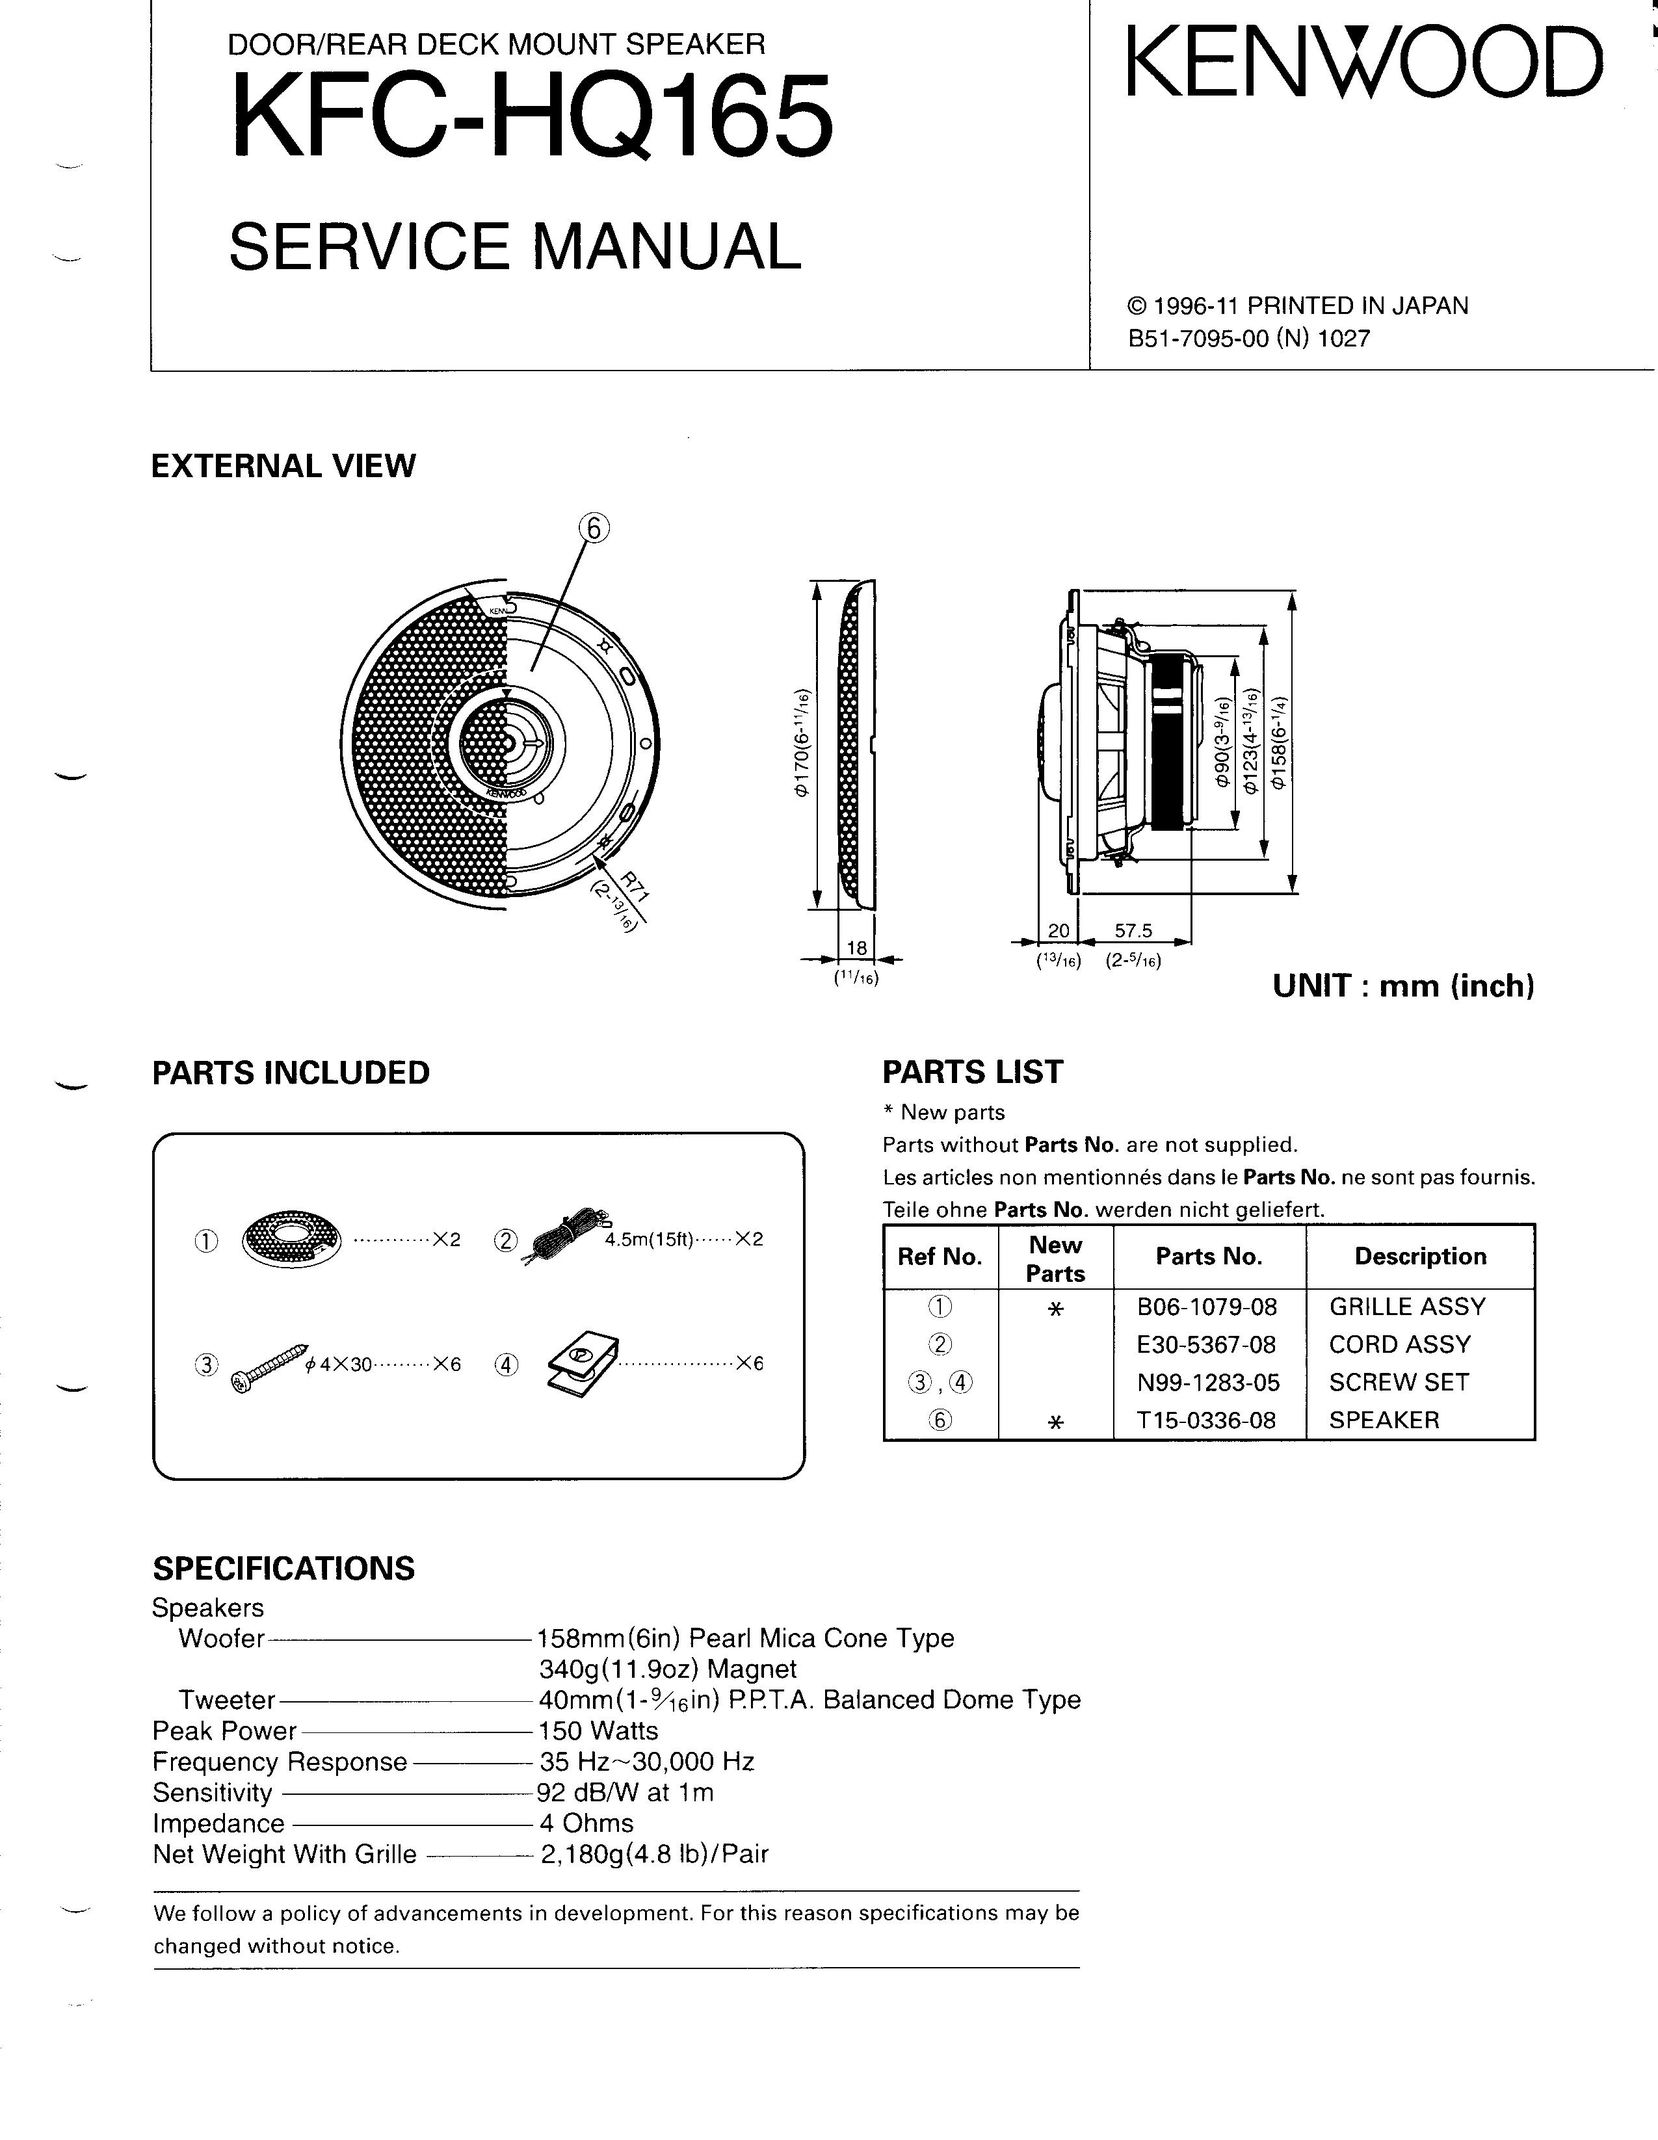 Kenwood KFC-HQ165 Car Speaker User Manual